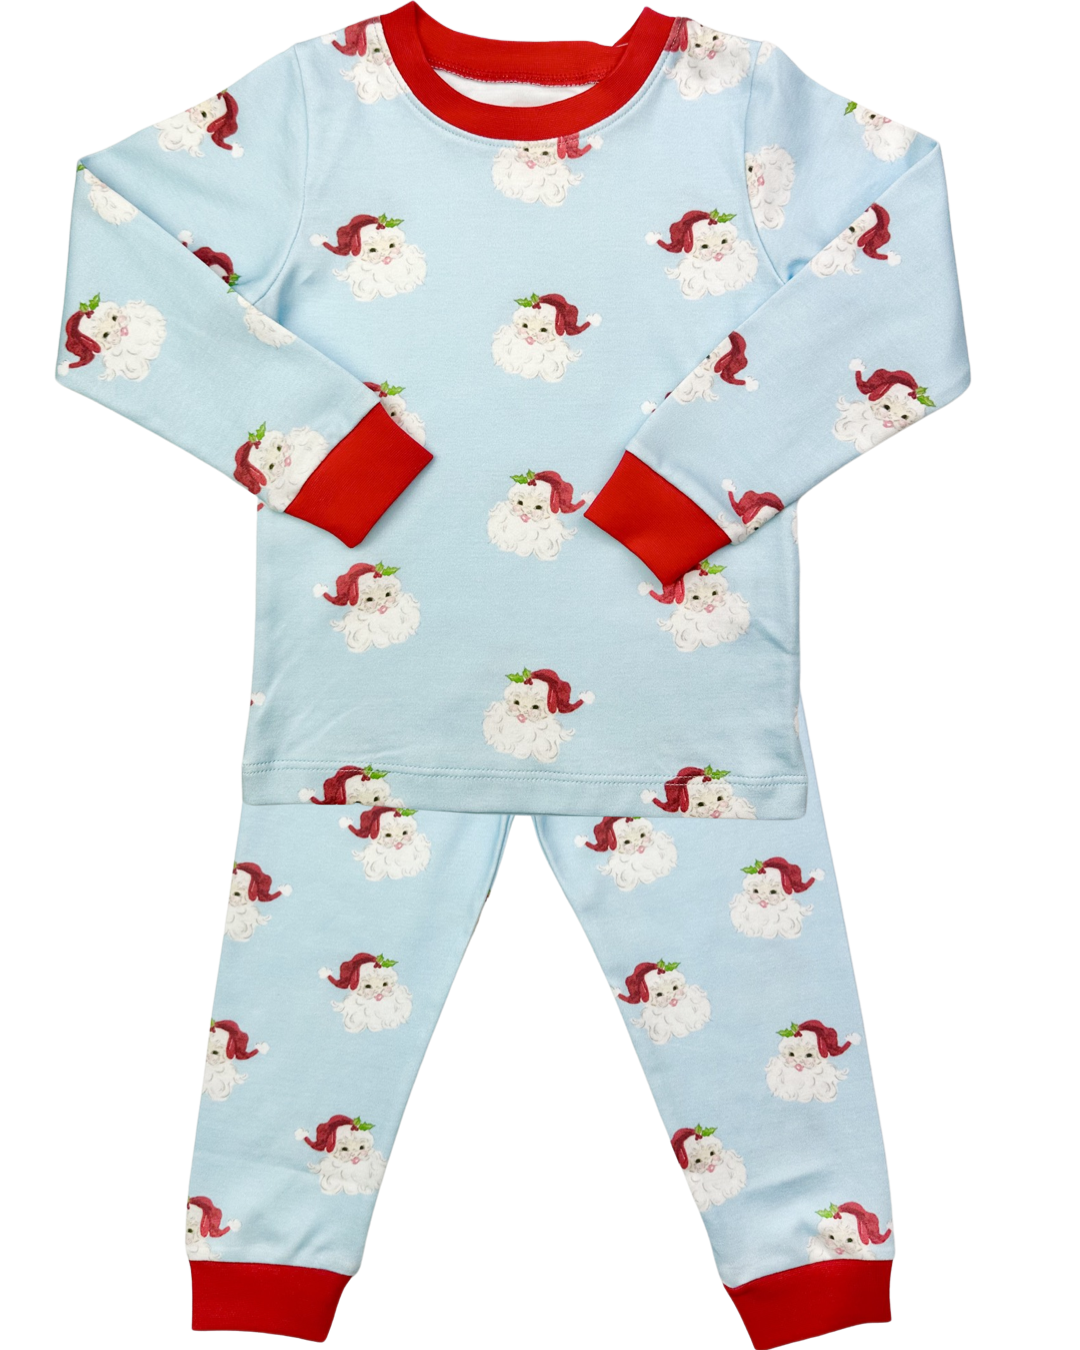 Two Piece Boy Jammies - Santa Knit  (Size 6)